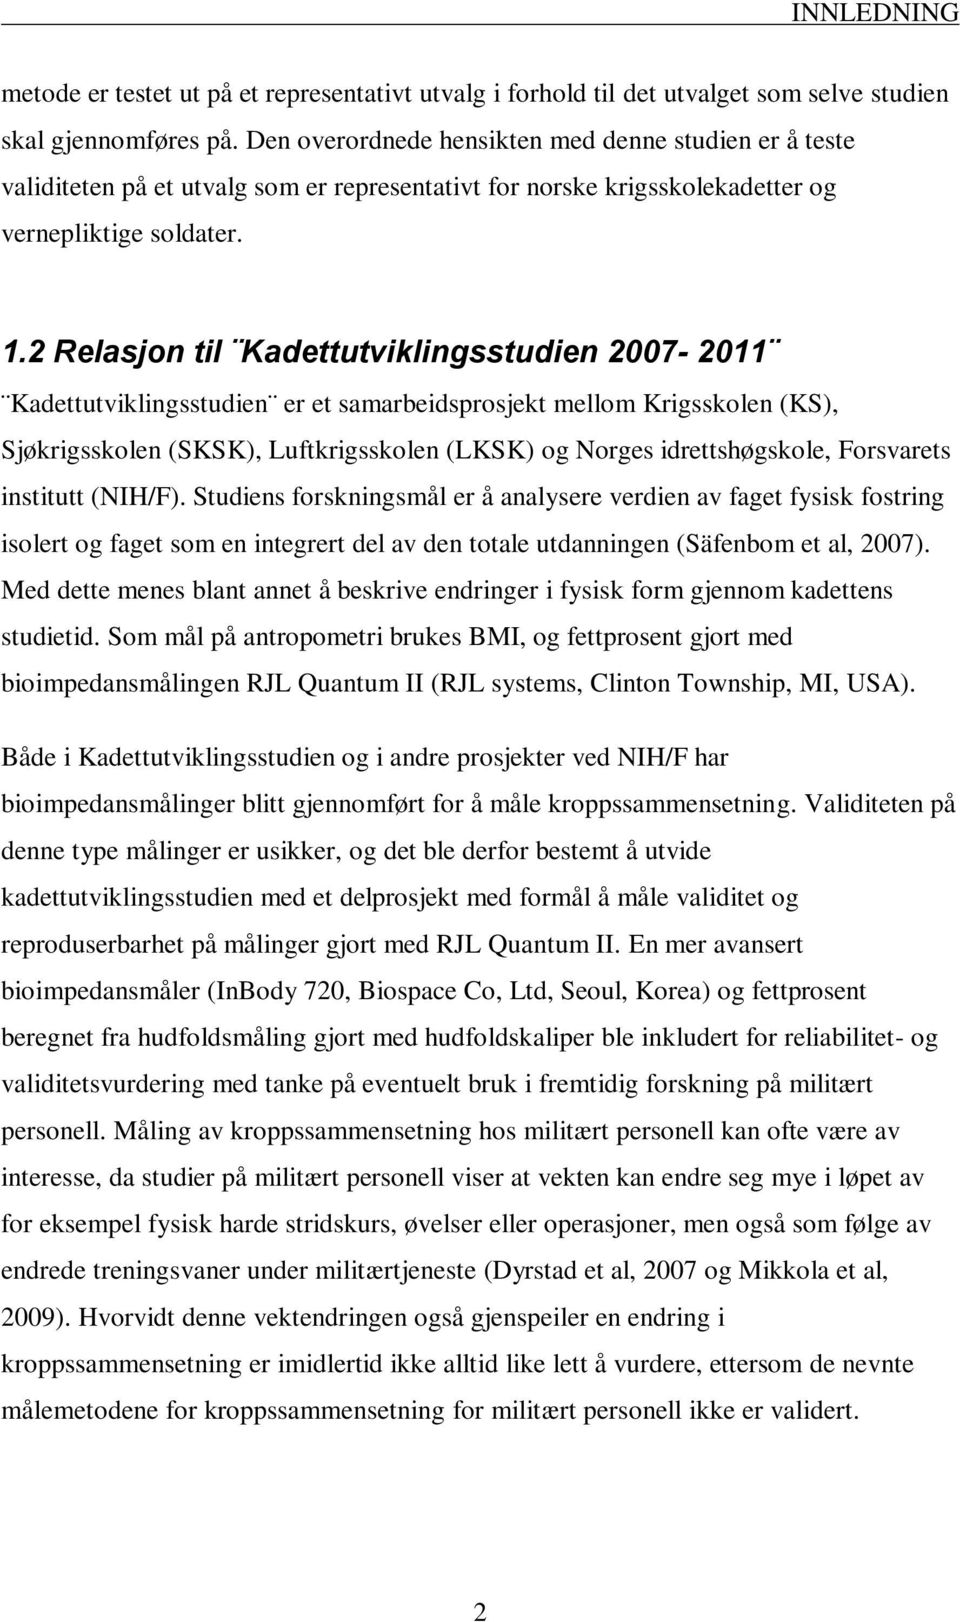 2 Relasjon til Kadettutviklingsstudien 2007-2011 Kadettutviklingsstudien er et samarbeidsprosjekt mellom Krigsskolen (KS), Sjøkrigsskolen (SKSK), Luftkrigsskolen (LKSK) og Norges idrettshøgskole,